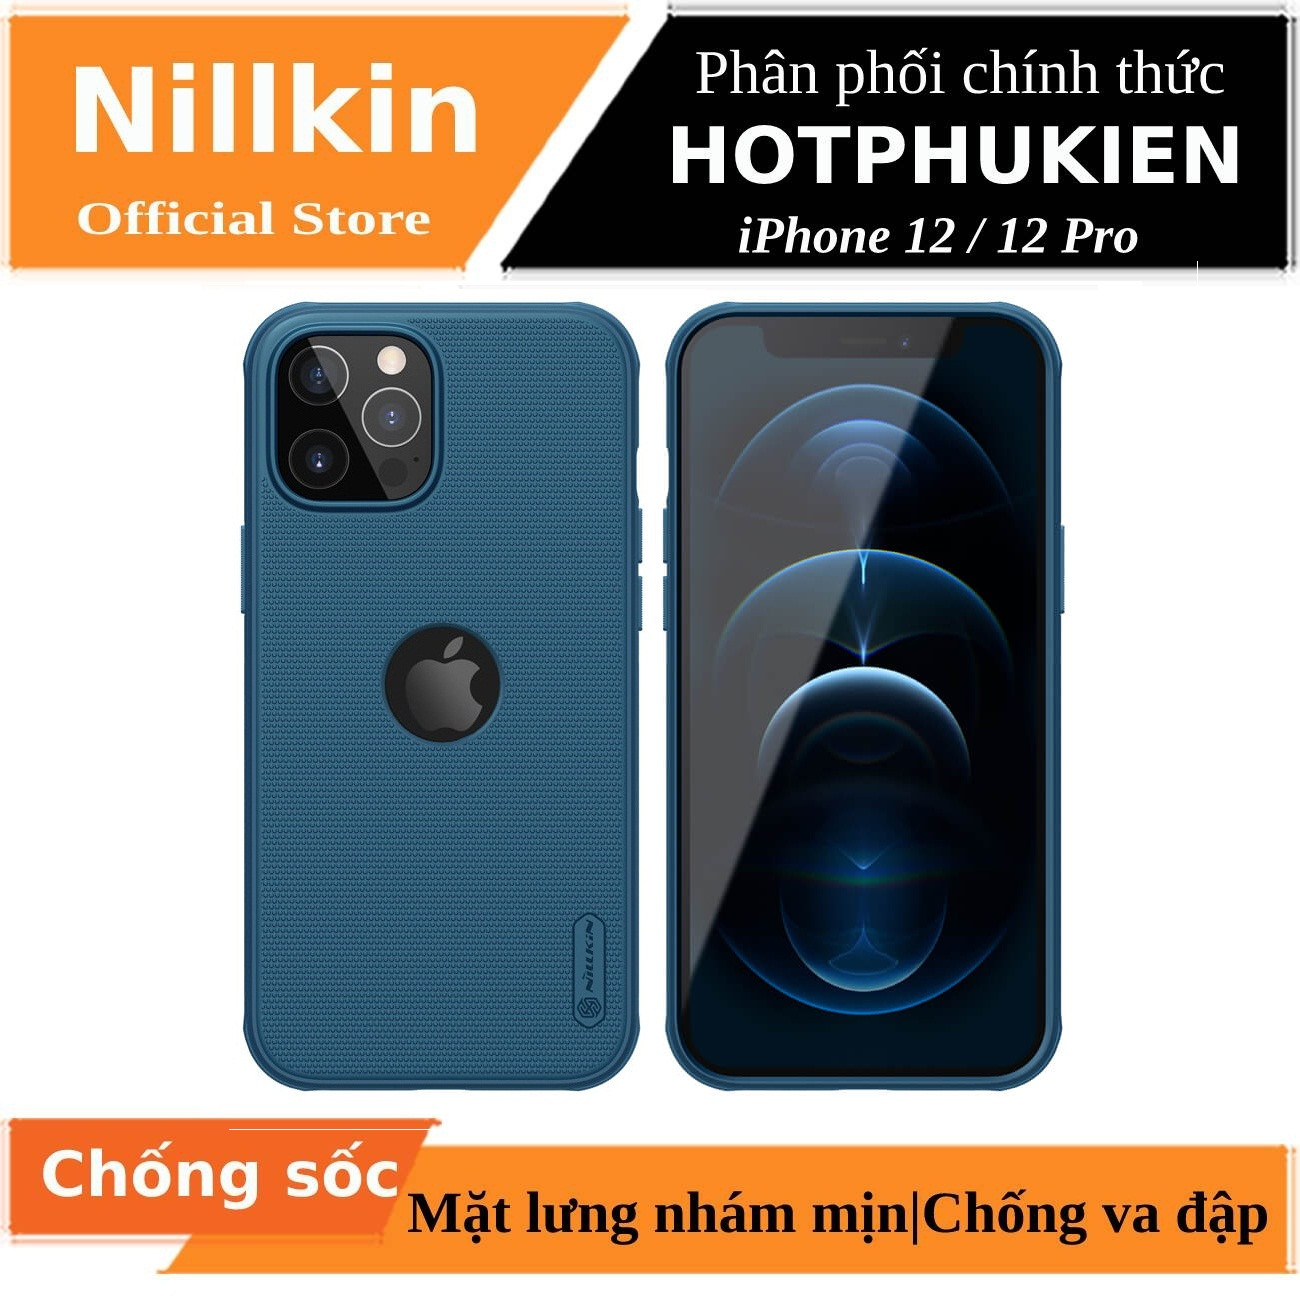 Ốp lưng iPhone 12 / iPhone 12 Pro chống sốc mặt lưng nhám (hở logo) hiệu Nillkin Super Frosted Shield Pro